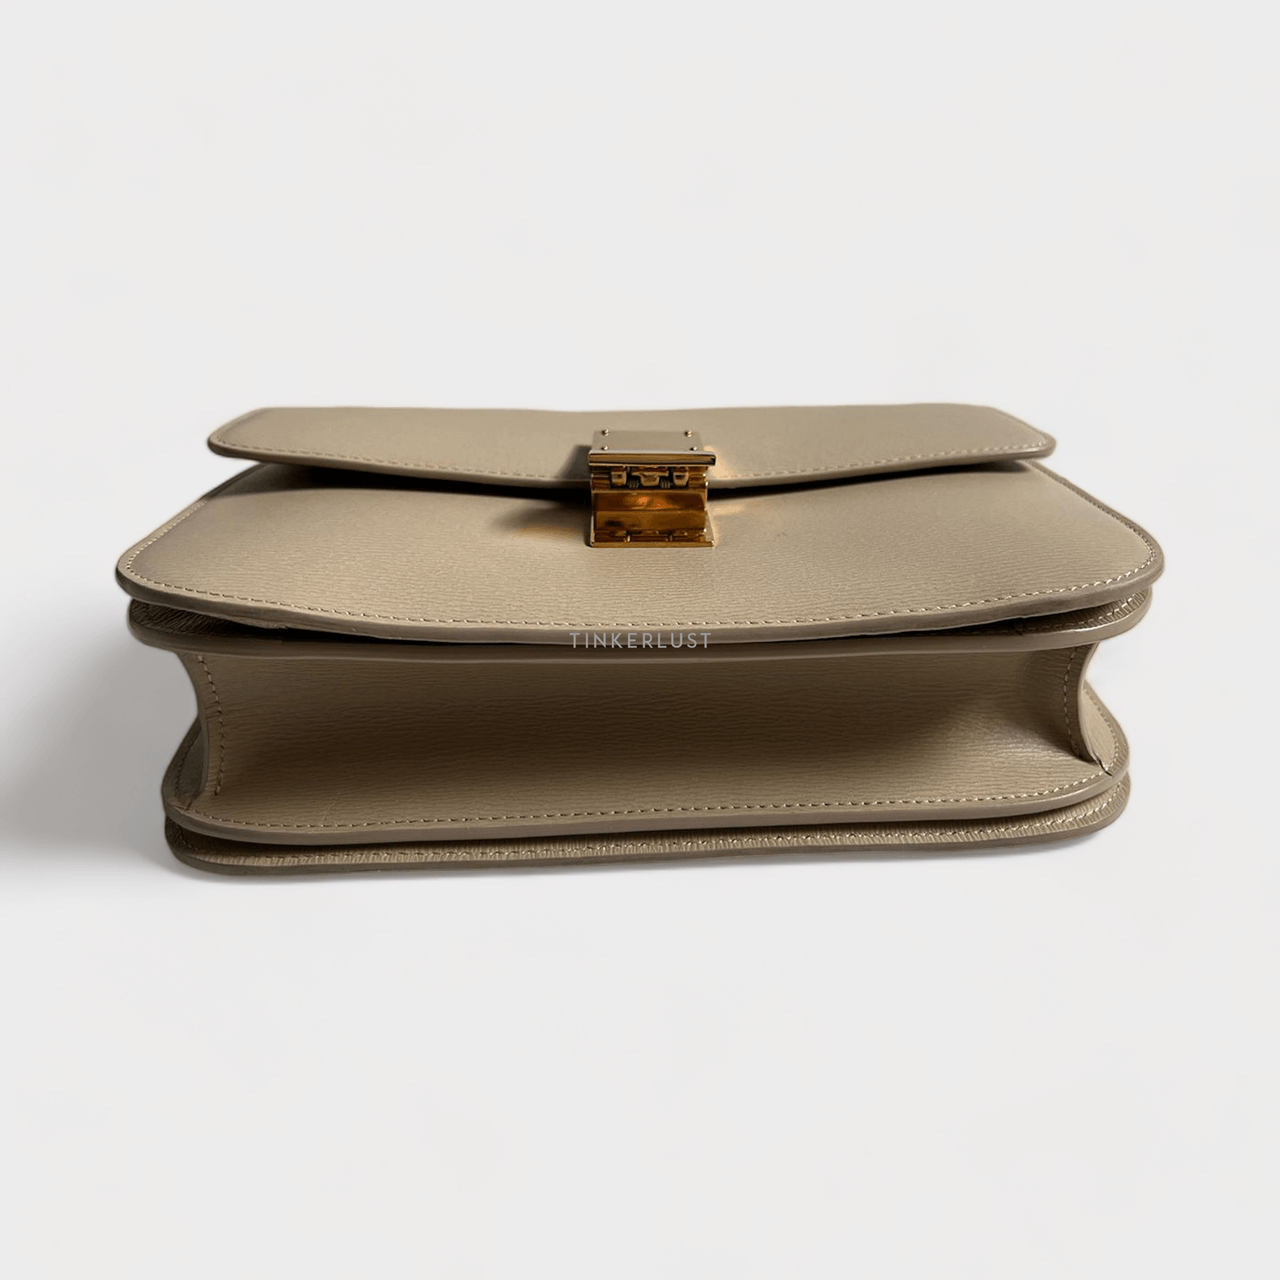 Celine Box Nude Grained Leather 2017 Shoulder Bag